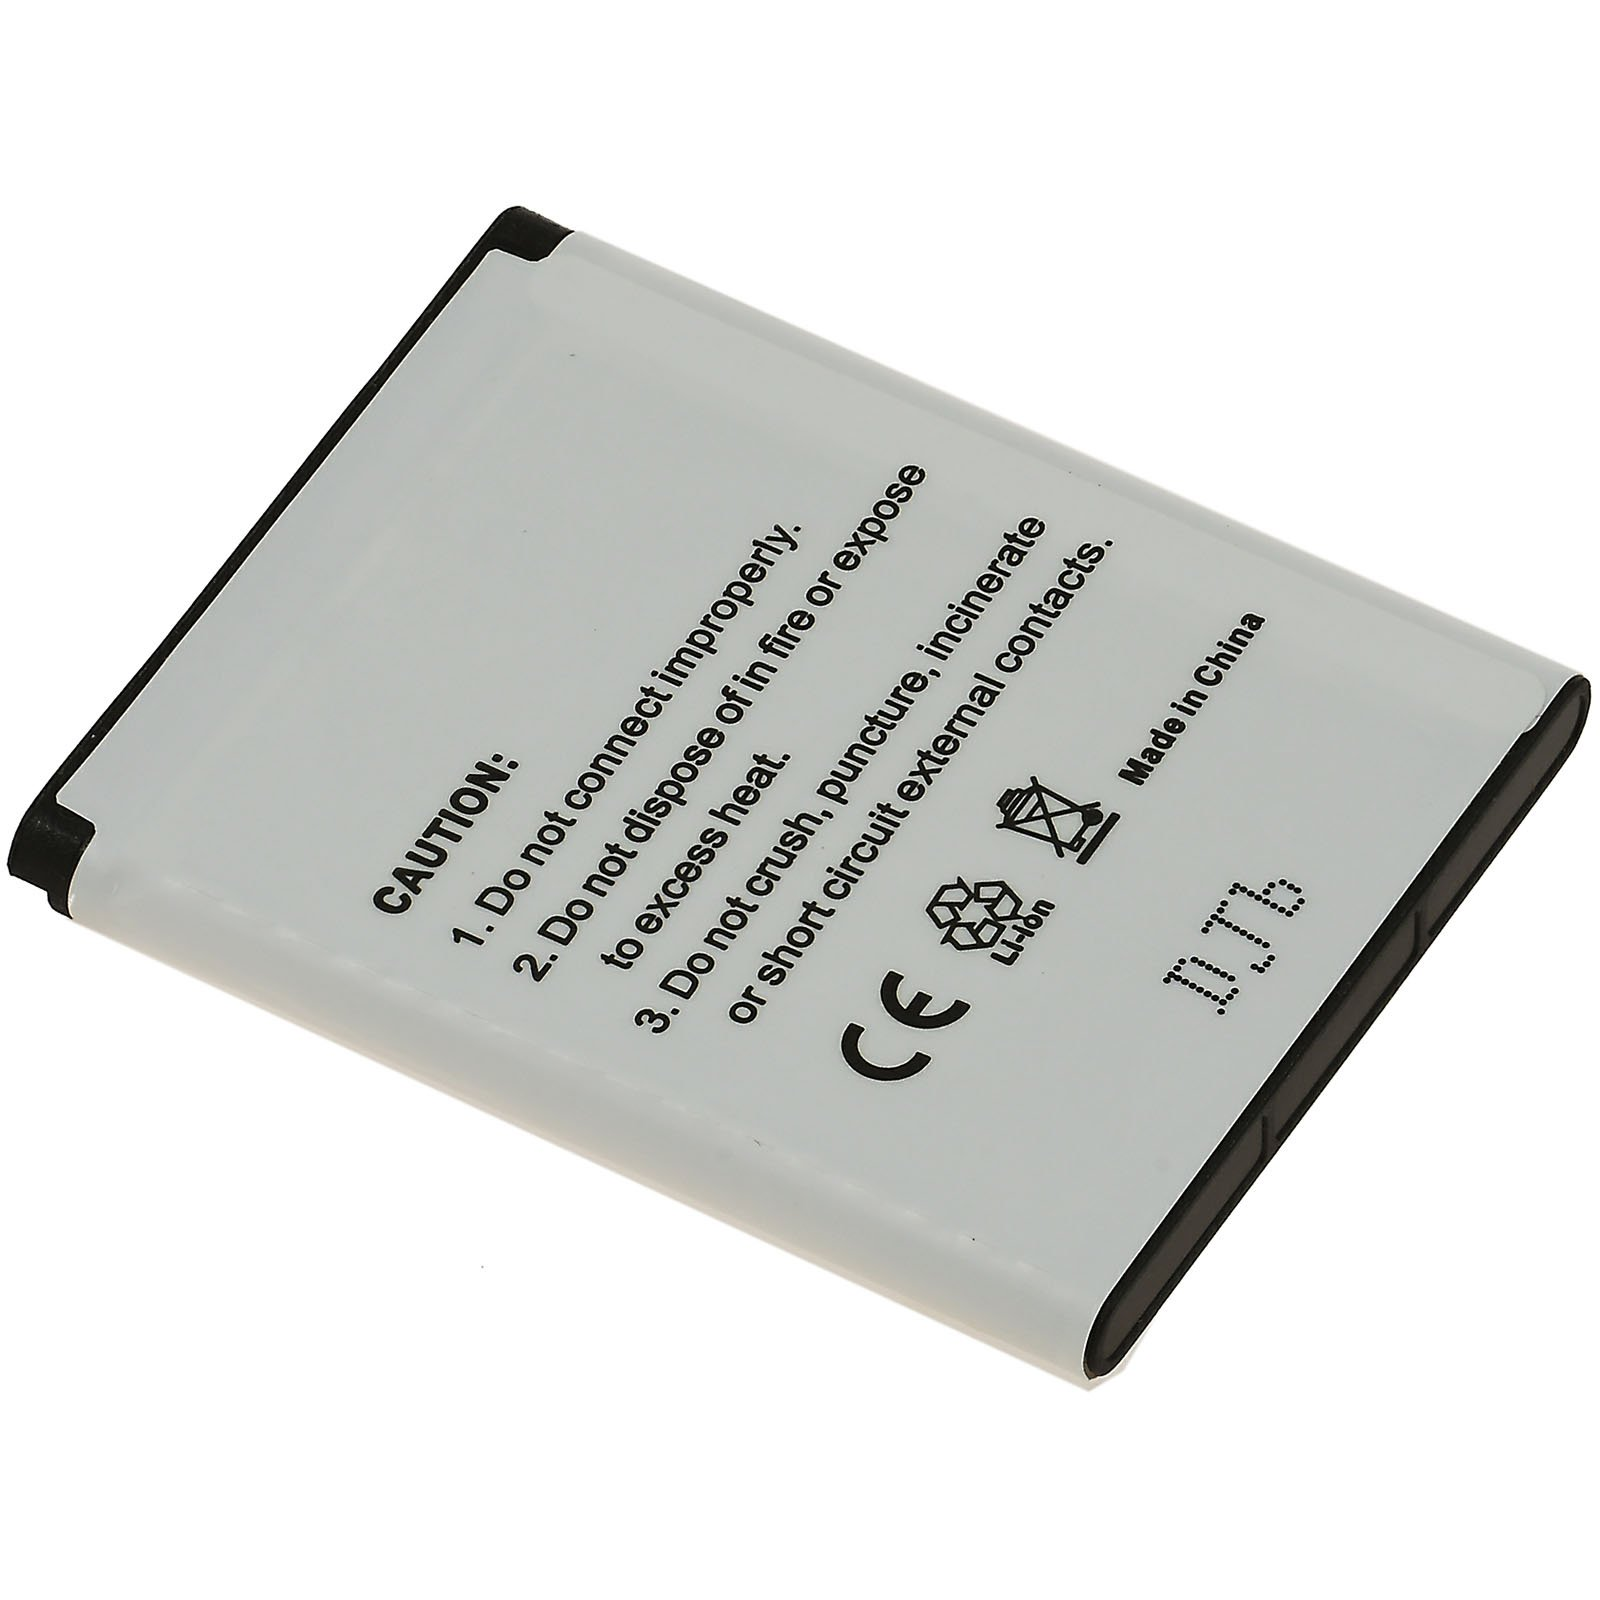 Li-Ion Volt, K550i Akku für 860mAh Akku, POWERY Sony-Ericsson 3.6